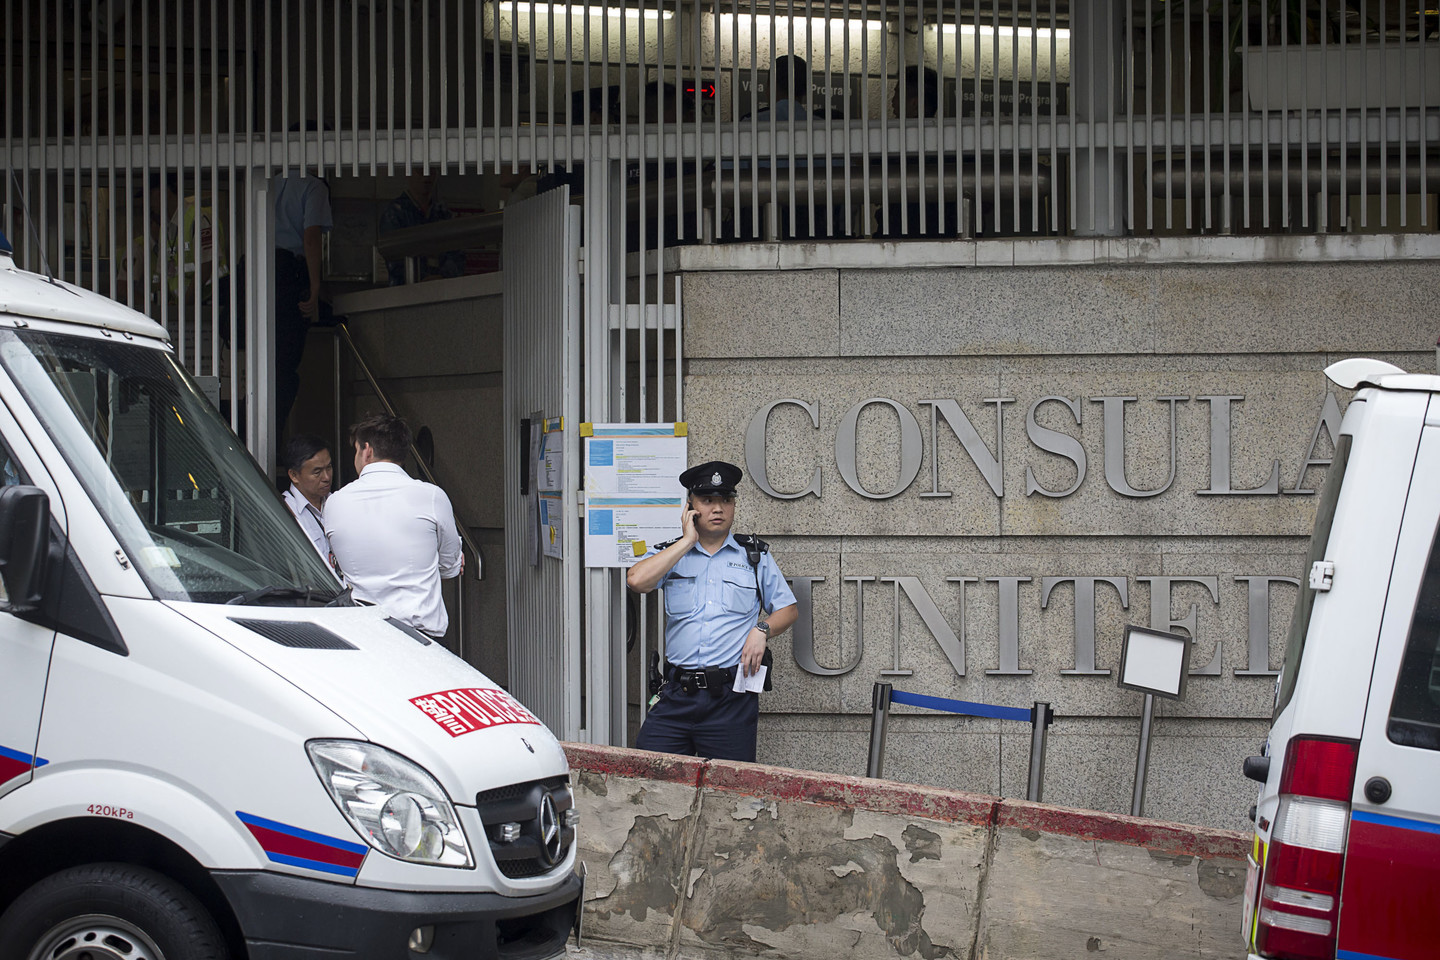  Dėl incidento konsulate buvo atšaukti visi pokalbiai dėl vizų, o prie pastato eilėje lūkuriuojantiems žmonėms buvo nurodyta nedelsiant išsiskirstyti.<br> AFP/„Scanpix“ nuotr. 